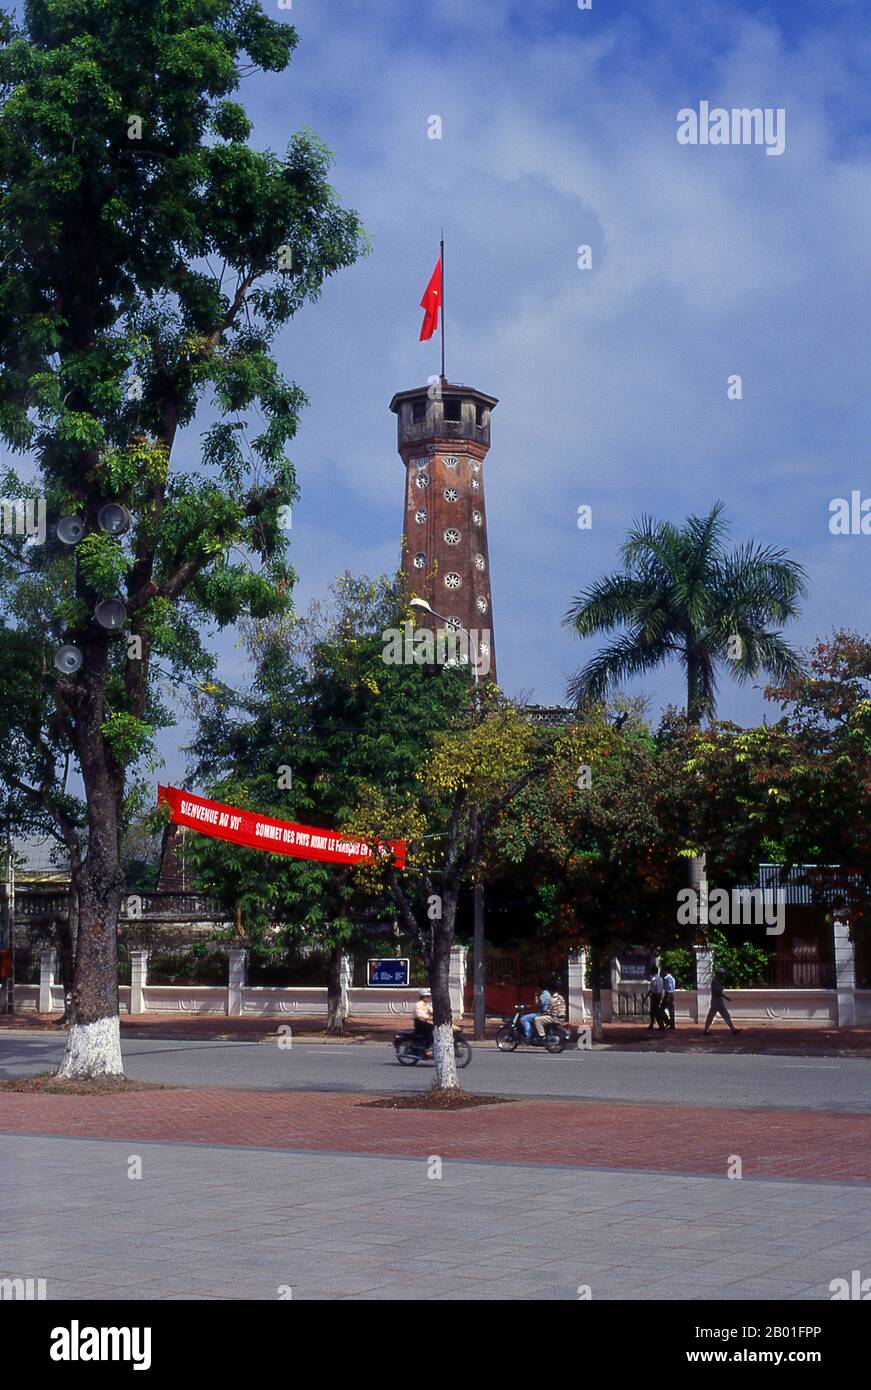 Vietnam: CoT Co, o la Torre de la Bandera, en los terrenos del Museo de Historia Militar, Hanoi. La Torre Hexagonal de la Bandera Cot Co fue reconstruida por el emperador Gia Long de la Dinastía Nguyen en 1803 como símbolo del poder Nguyen en el norte. La torre es un símbolo importante tanto de Hanoi como de las fuerzas armadas vietnamitas. Foto de stock